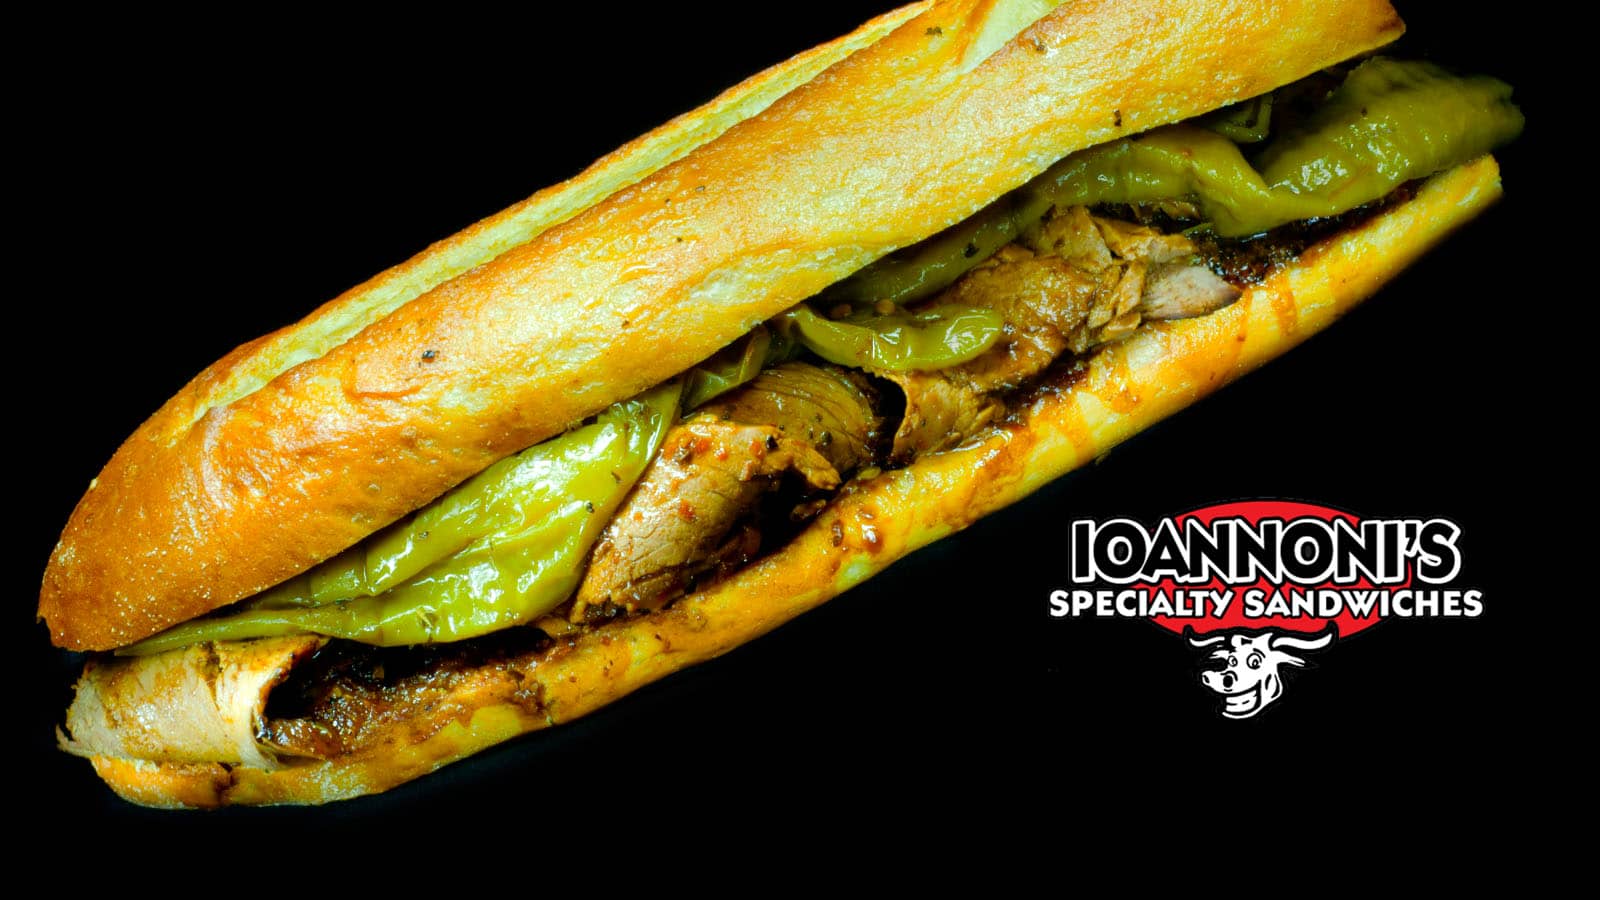 Pork Sandwich from Ioannoni’s